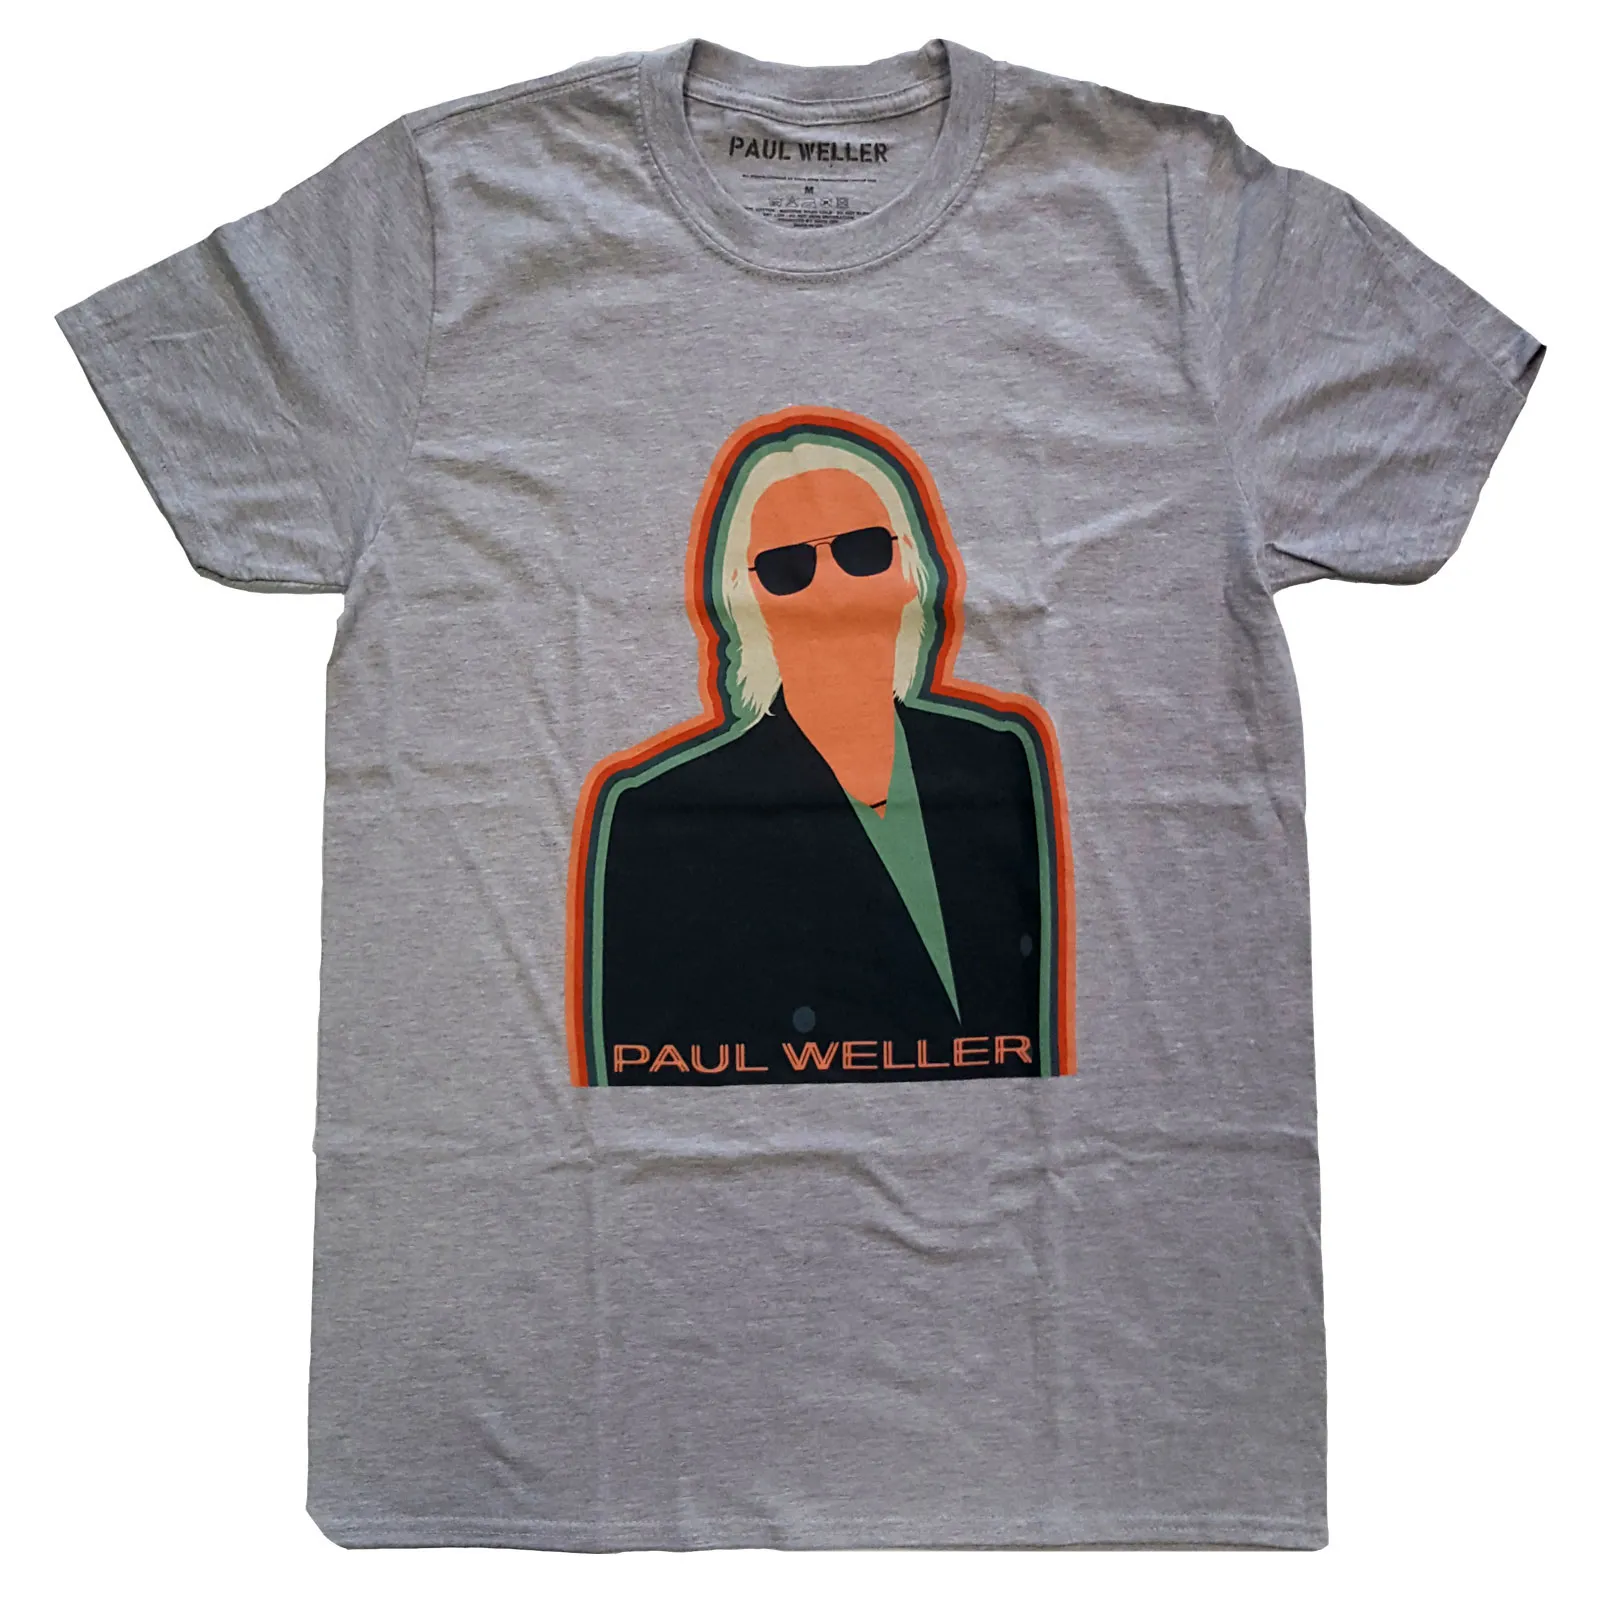 Paul Weller - Unisex T-Shirt Illustration Key Lines artwork